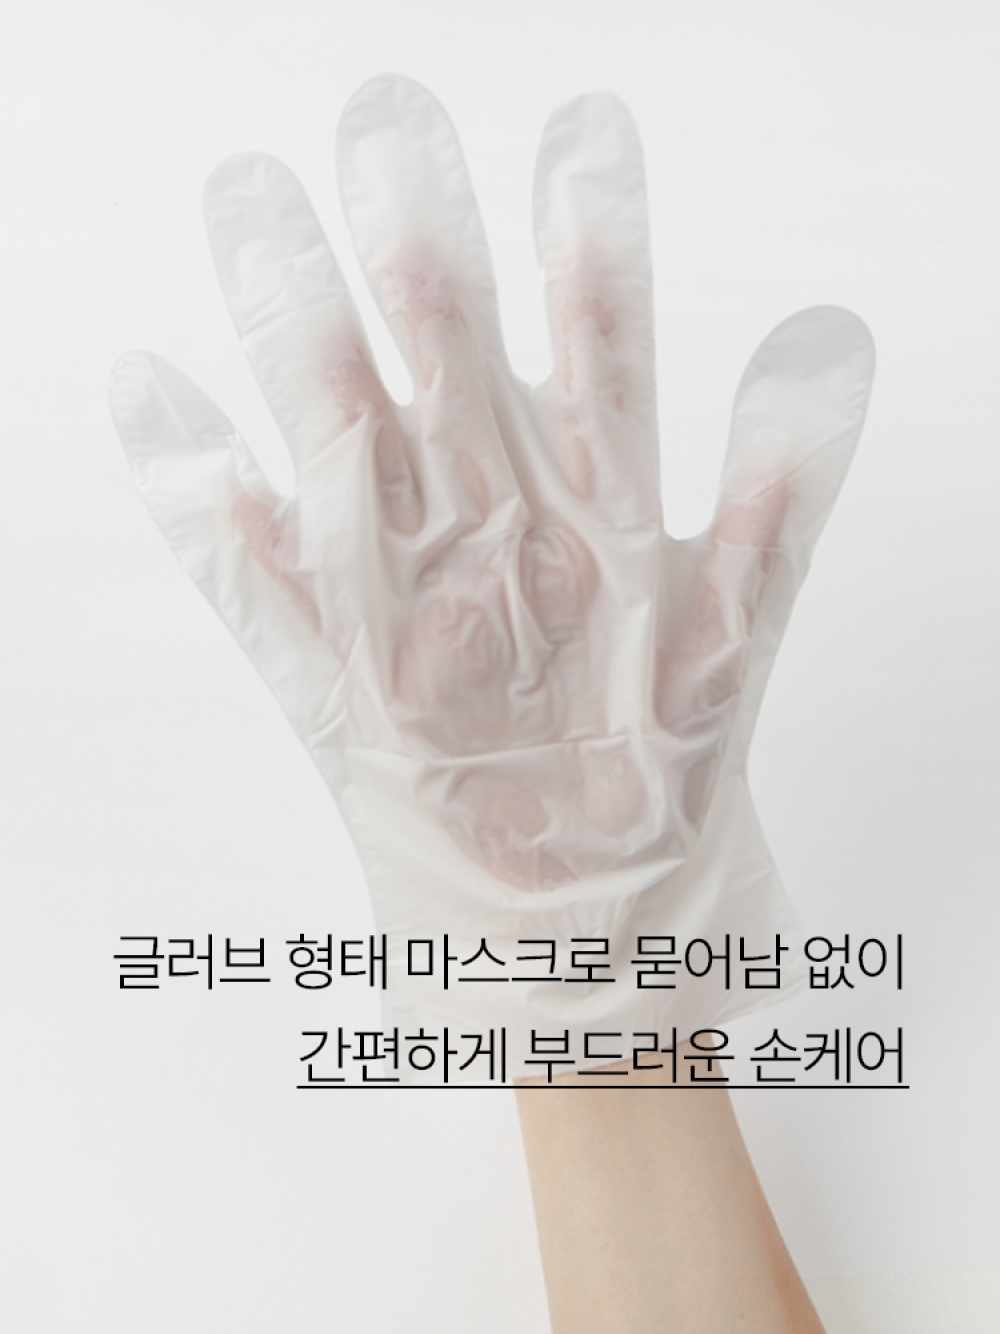 이니스프리 스페셜 케어 마스크 [핸드] 20mL - 촉촉매끈손, 부드러운손, 장갑마스크